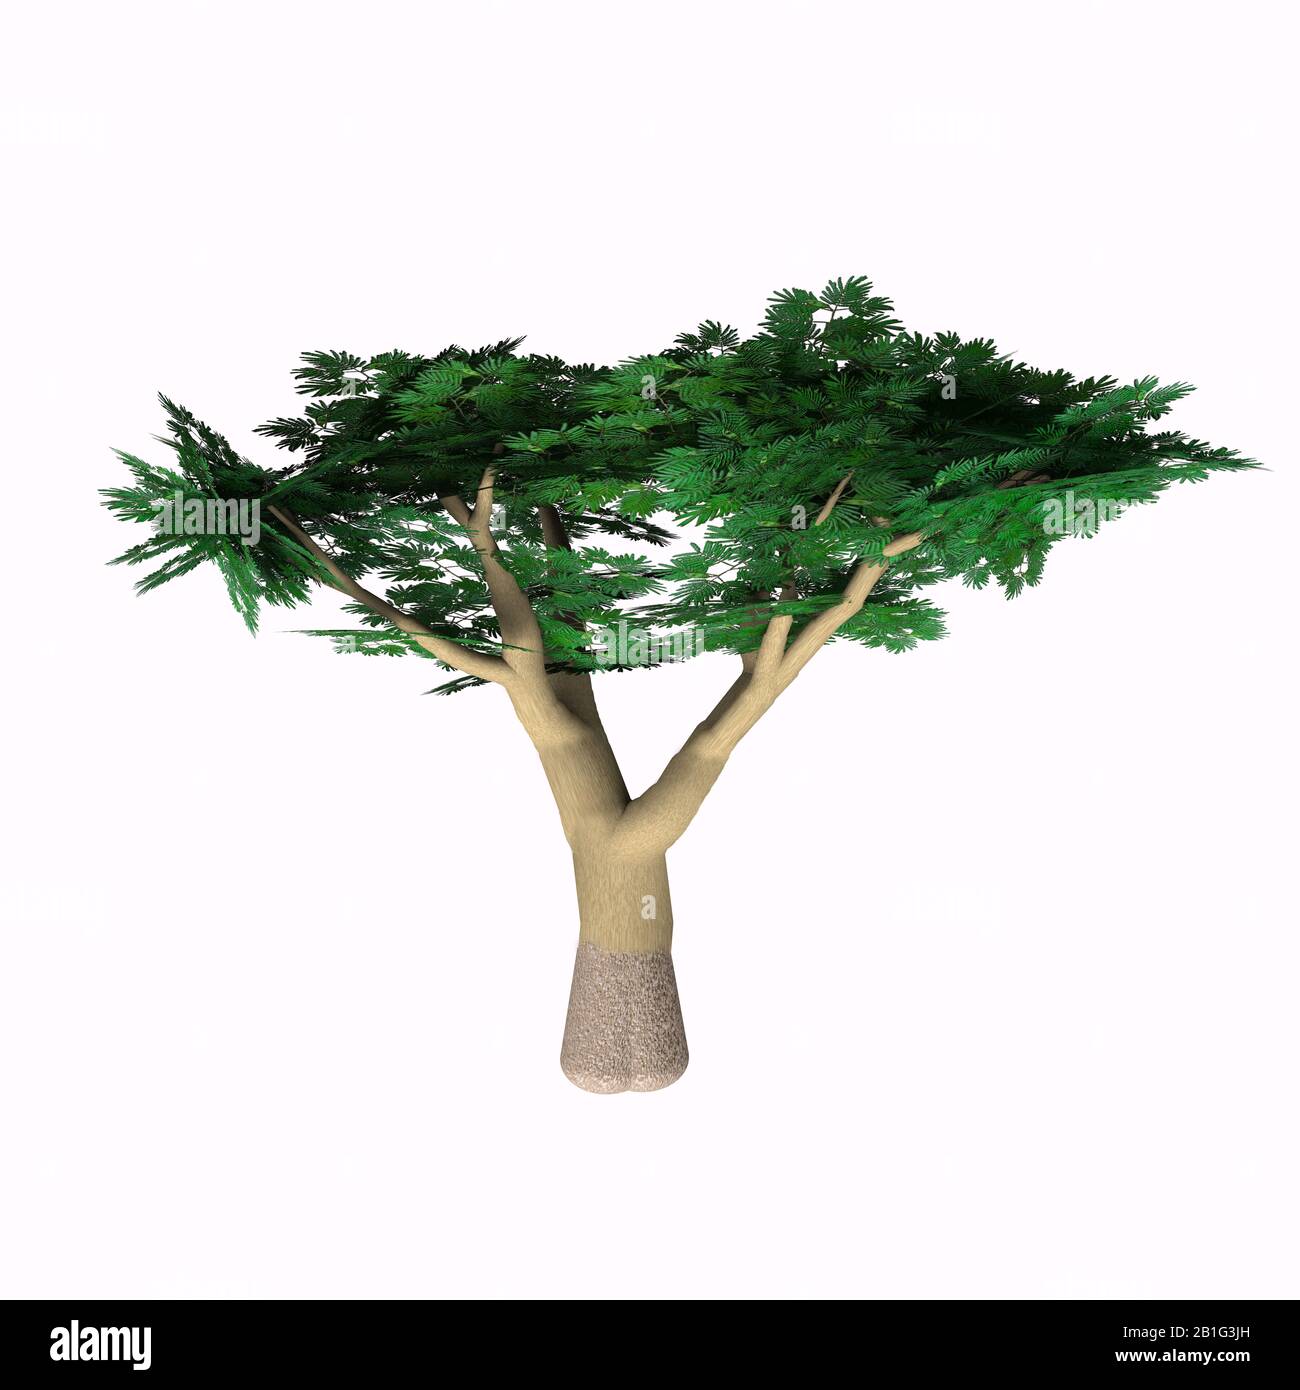 La spina Umbrella Acacia cresce come albero, arbusto o cespuglio in Africa e ha baccelli di seme fruttiferi. Foto Stock